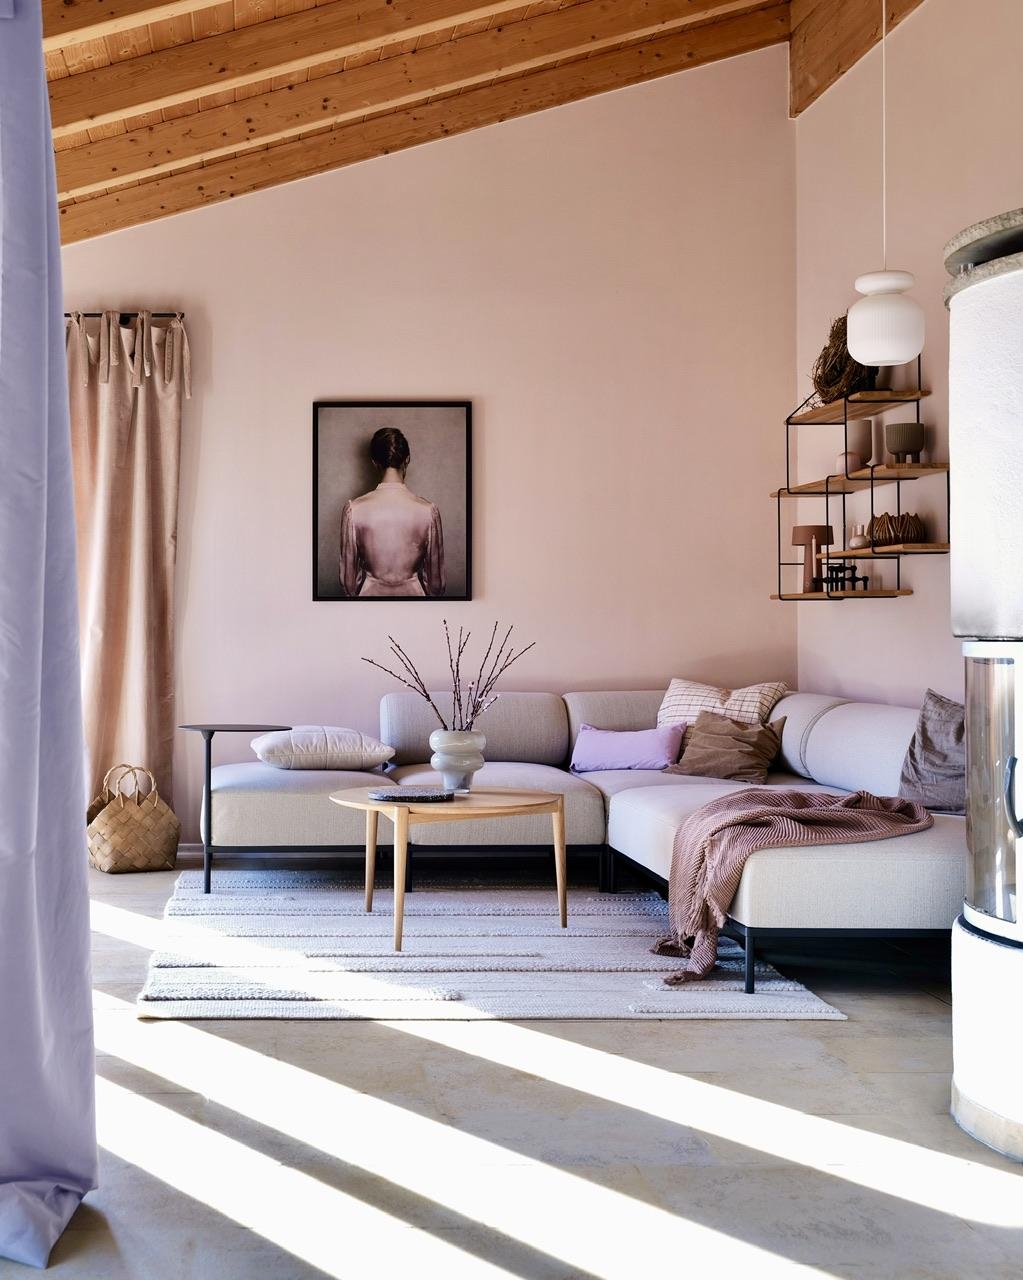 Sonnenschein in #wohnzimmer
#hygge #scandi #couch #nude #beige #sofa #regal #holz